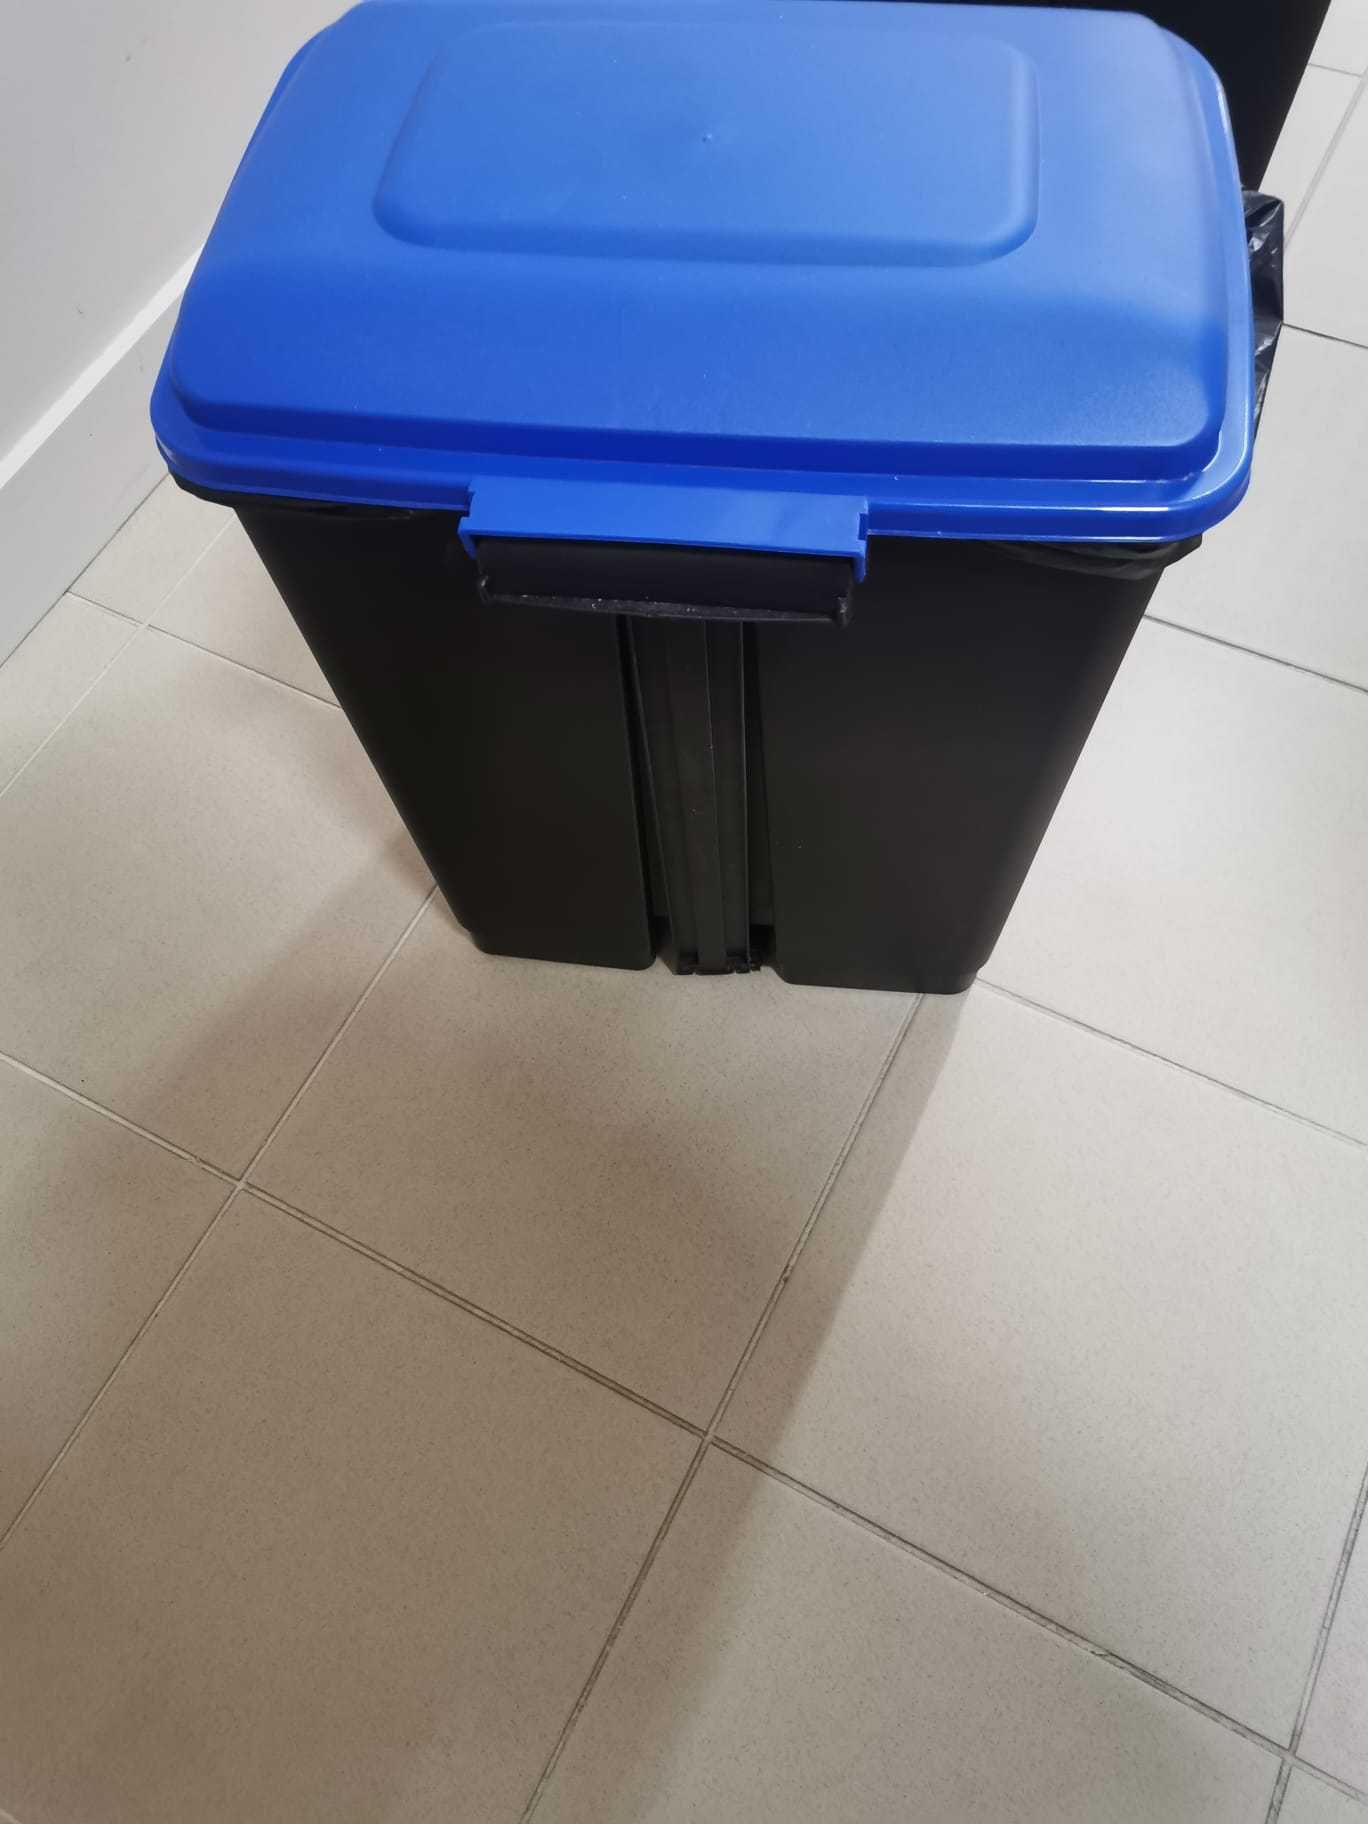 2 baldes de lixo de reciclagem amarelo e azul